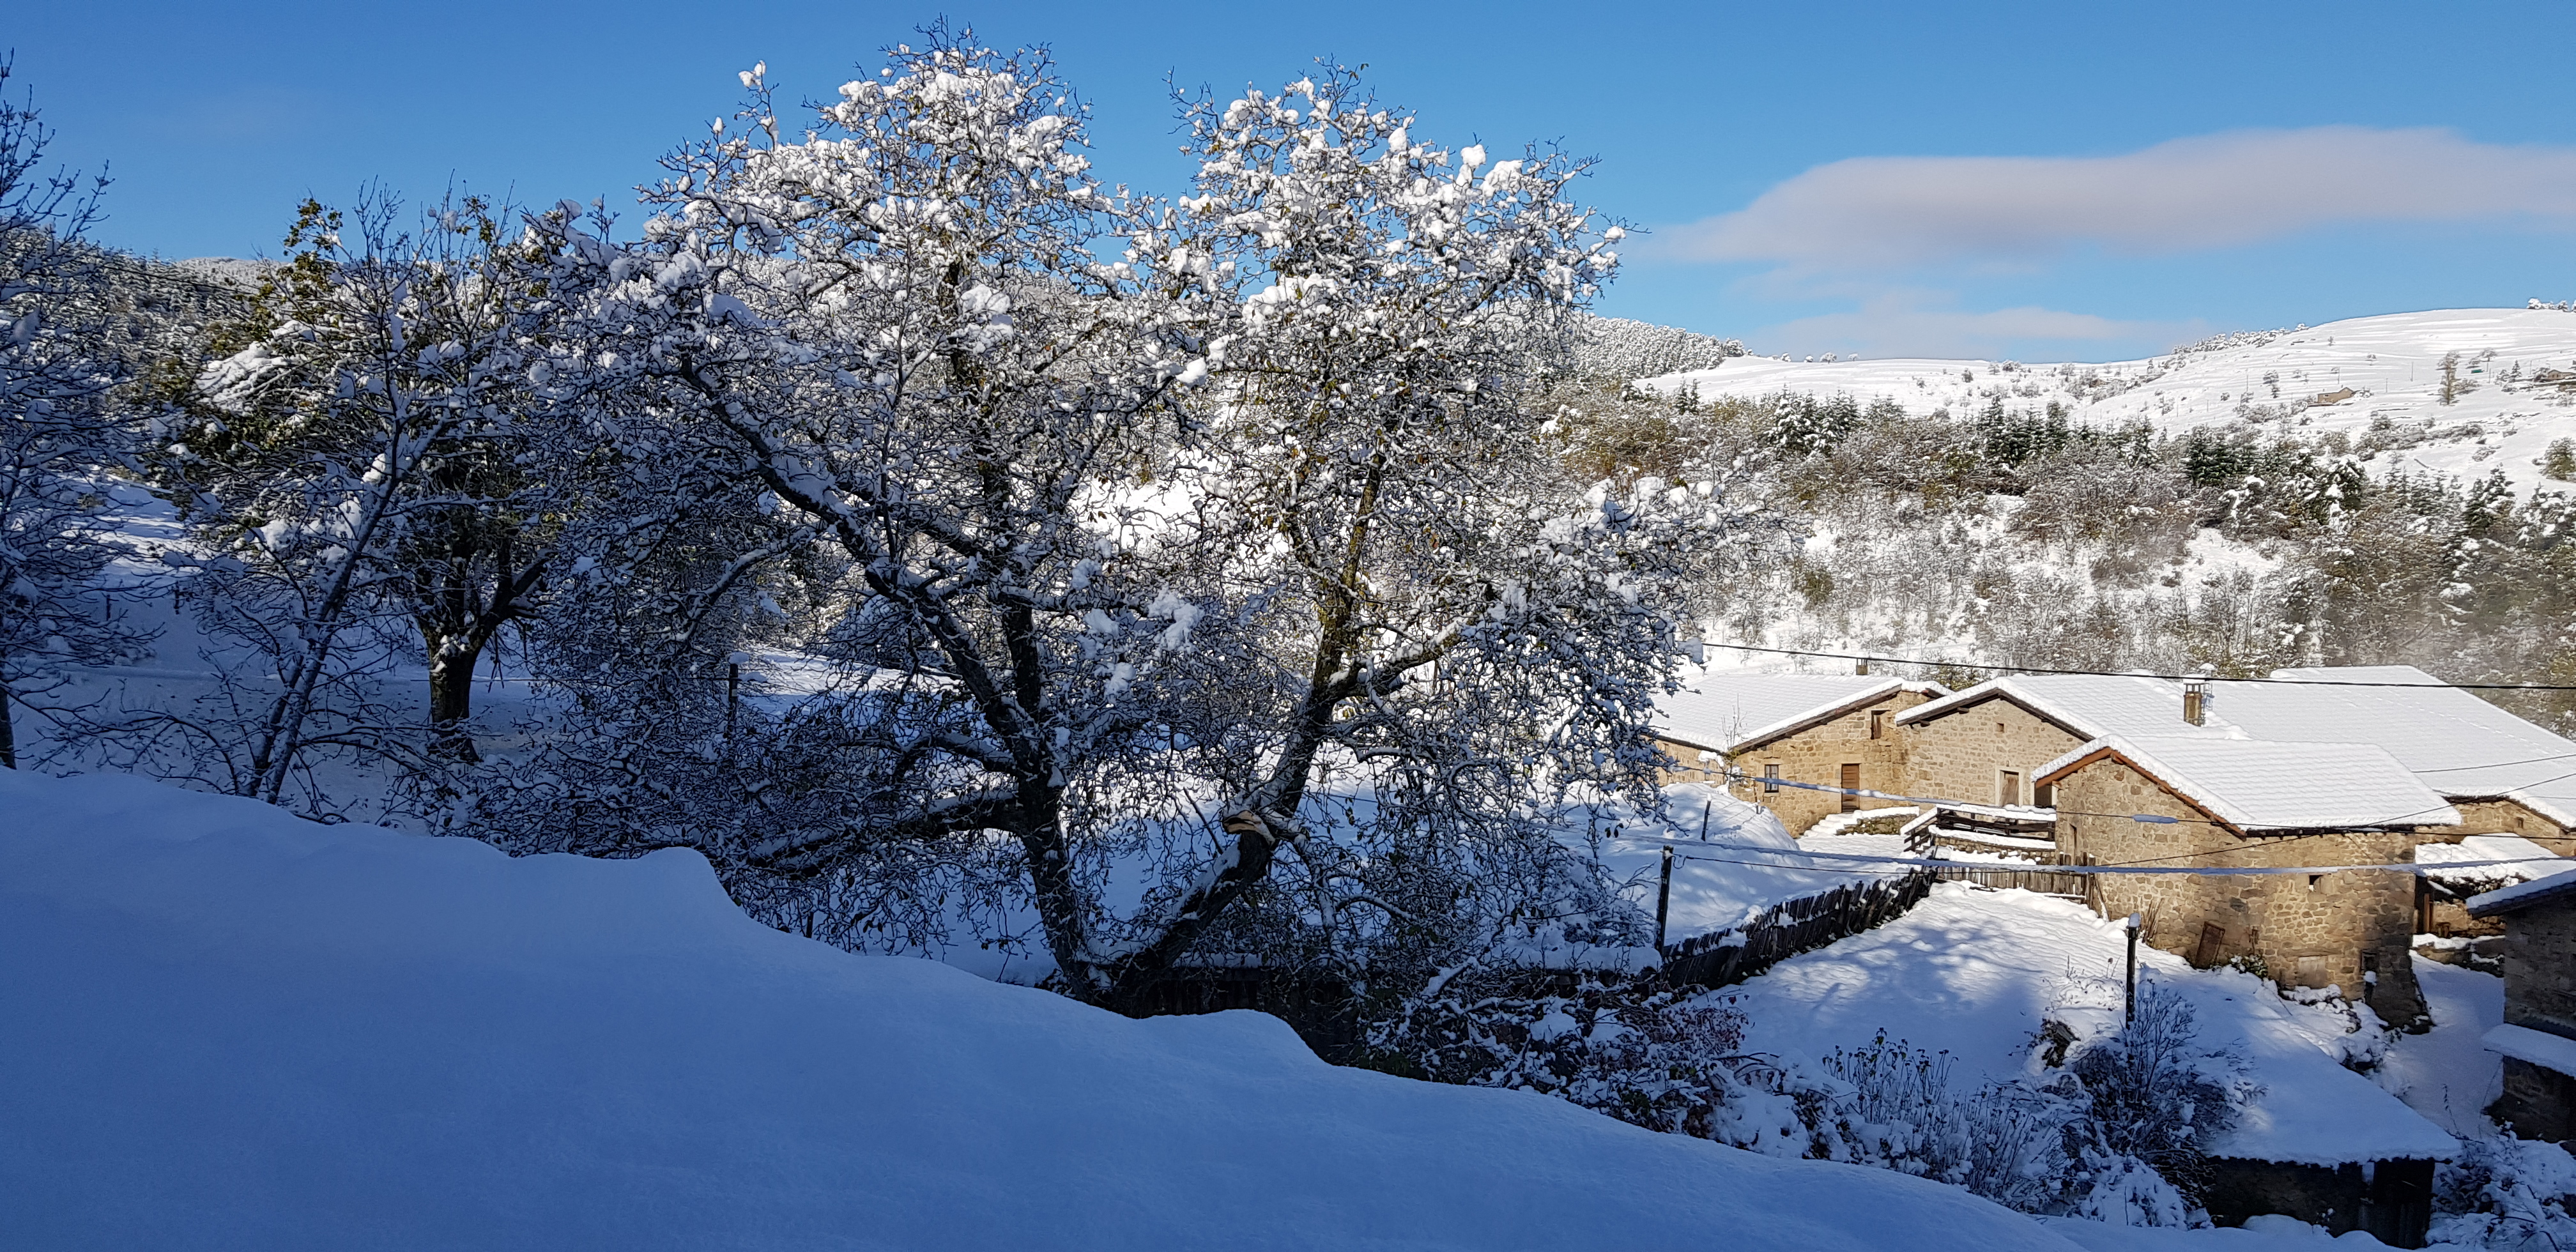 Explorez notre galerie photos : découvrez l'intérieur chaleureux de nos logements et la beauté naturelle de l'Ardèche. Les Échoppes de Longefaye vous invitent à une expérience unique dans ce cadre enchanteur.